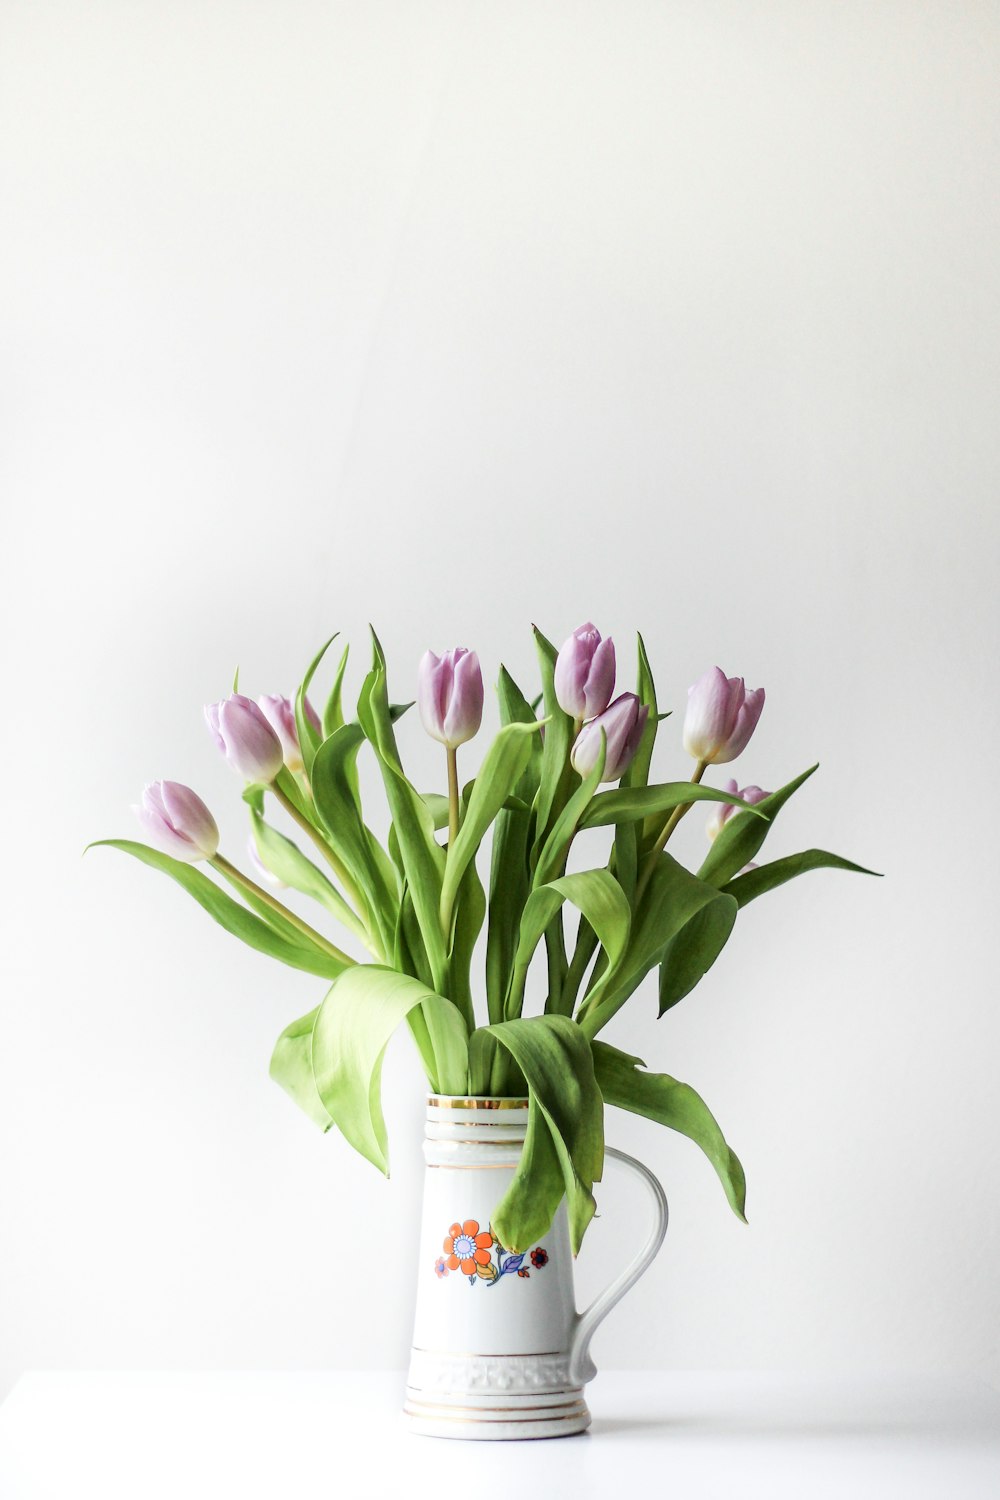 fotografía de enfoque selectivo del arreglo de flores de tulipán púrpura